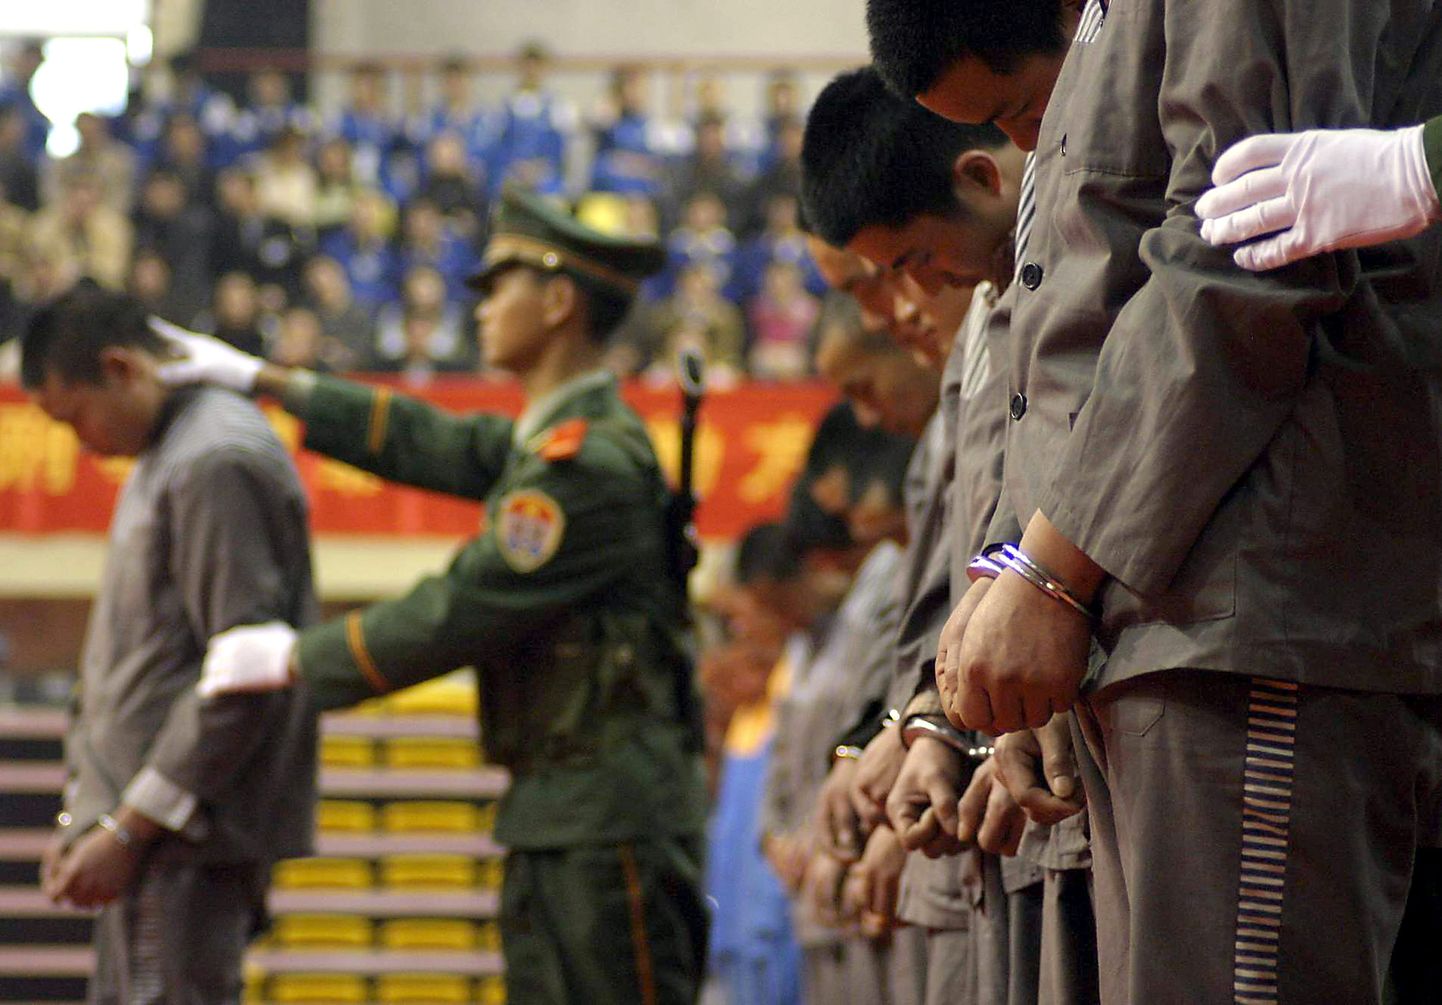 Hiina politsei ja vangid. Pilt on illustreeriv